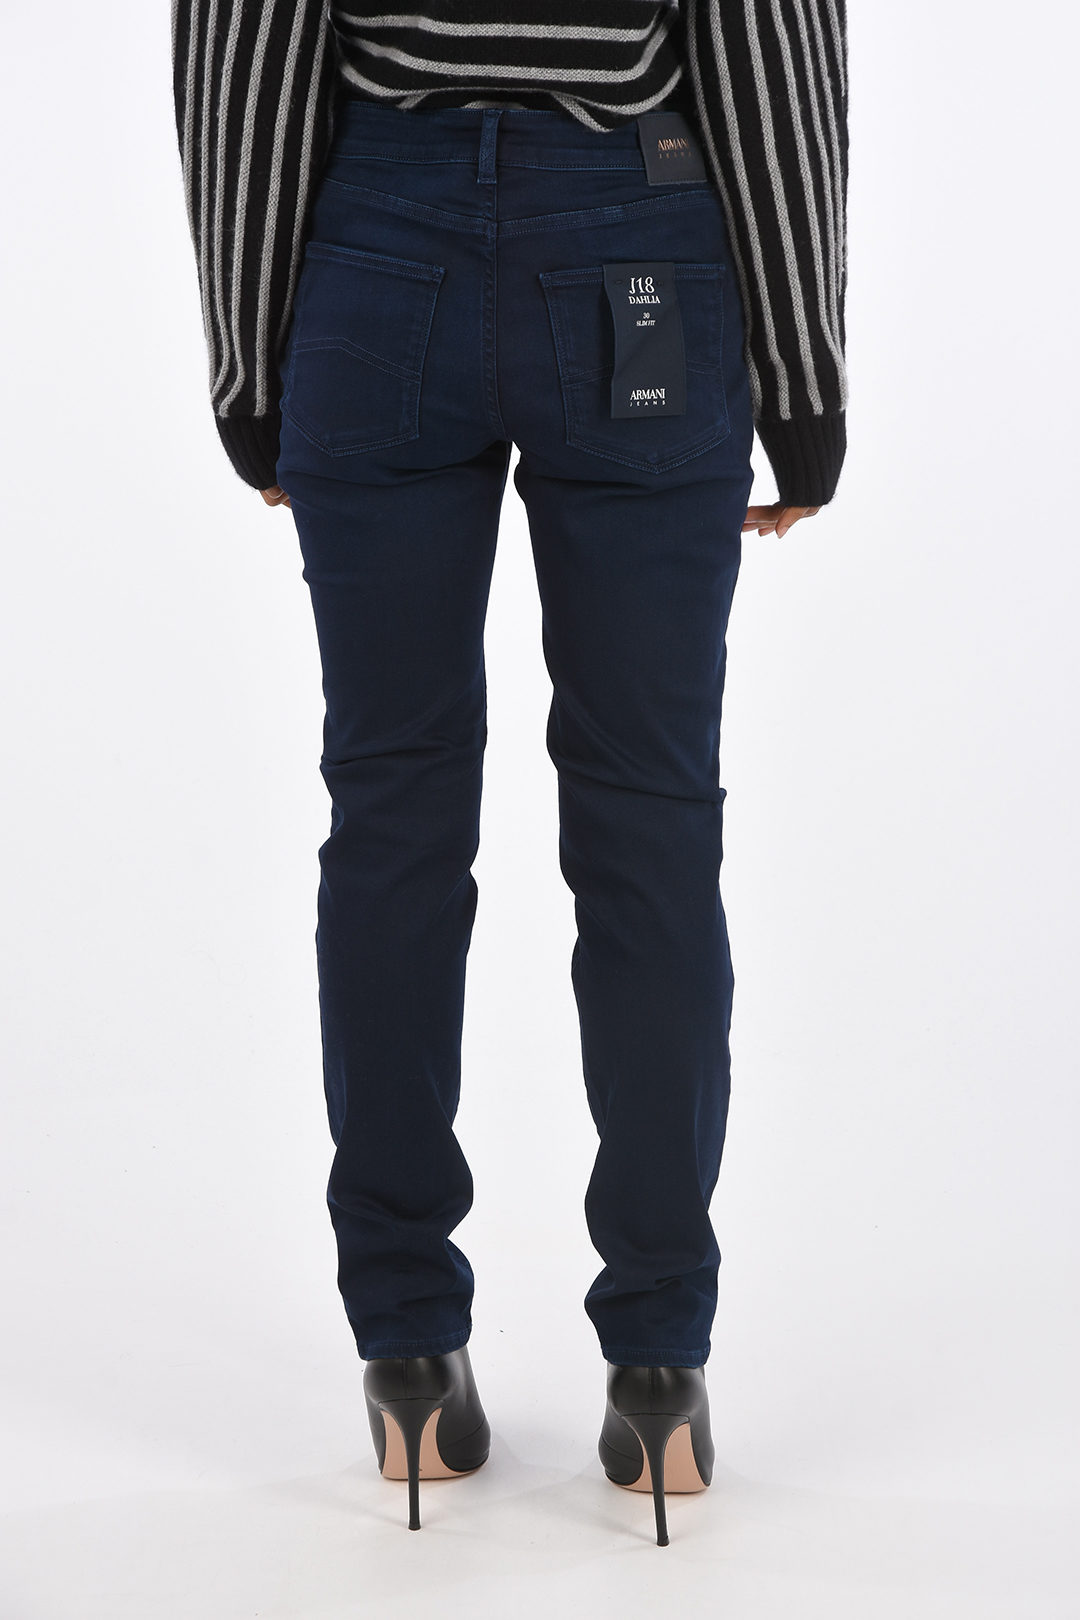 Armani ARMANI Slim Fit J18 DAHLIA Jeans women - Outlet